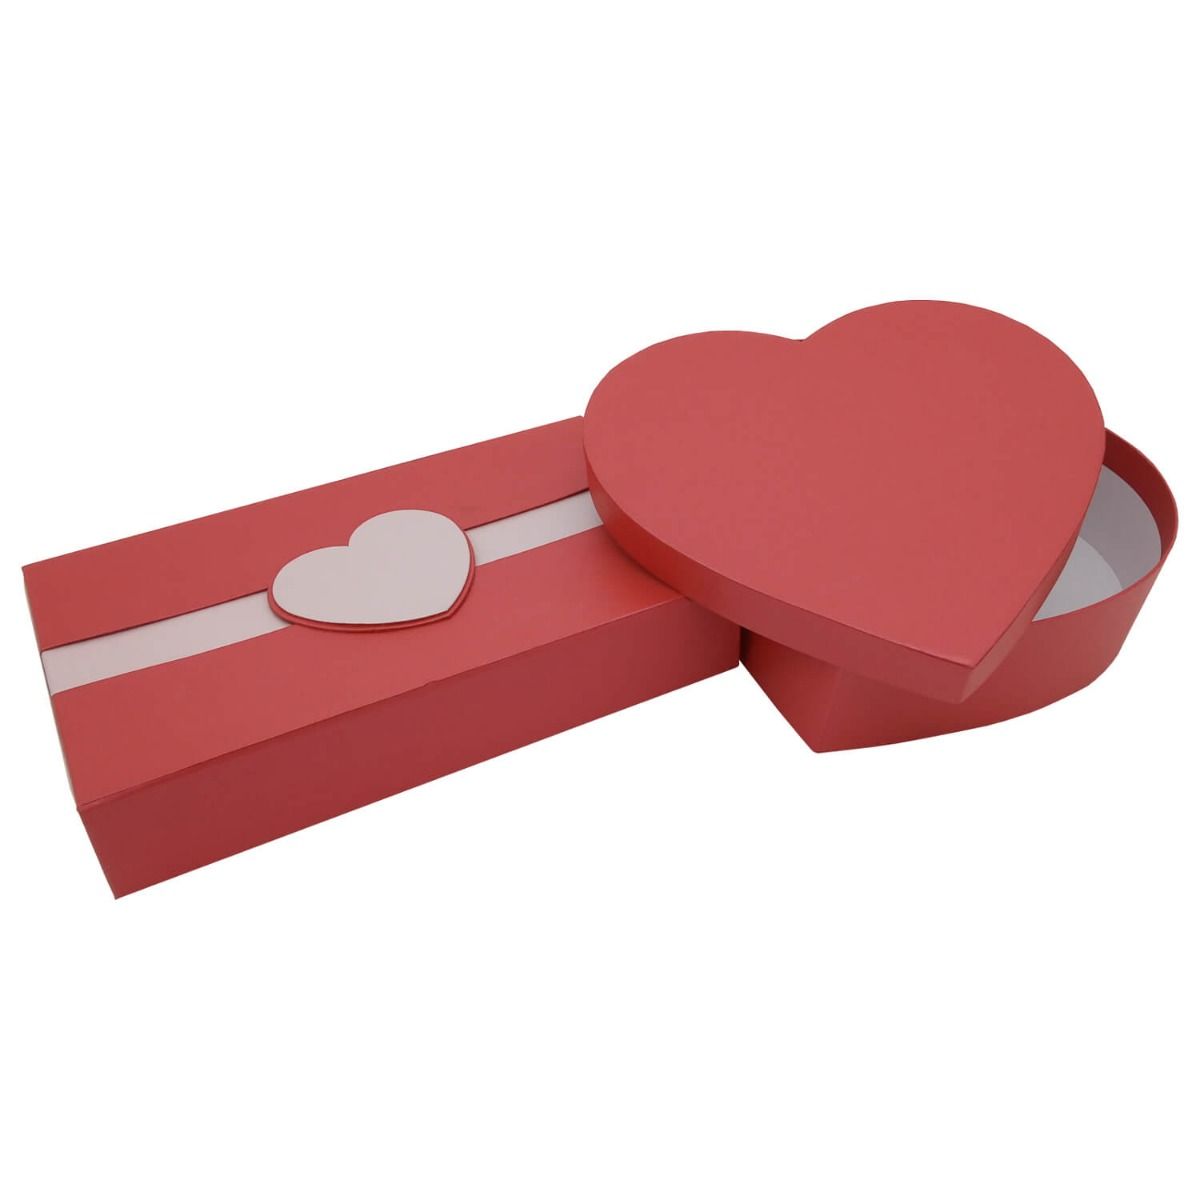 Scatola di cartone colore rosso e forma di cuore: 10 pezzi. - 5/5 Ich  empfehle die Produkte!!!